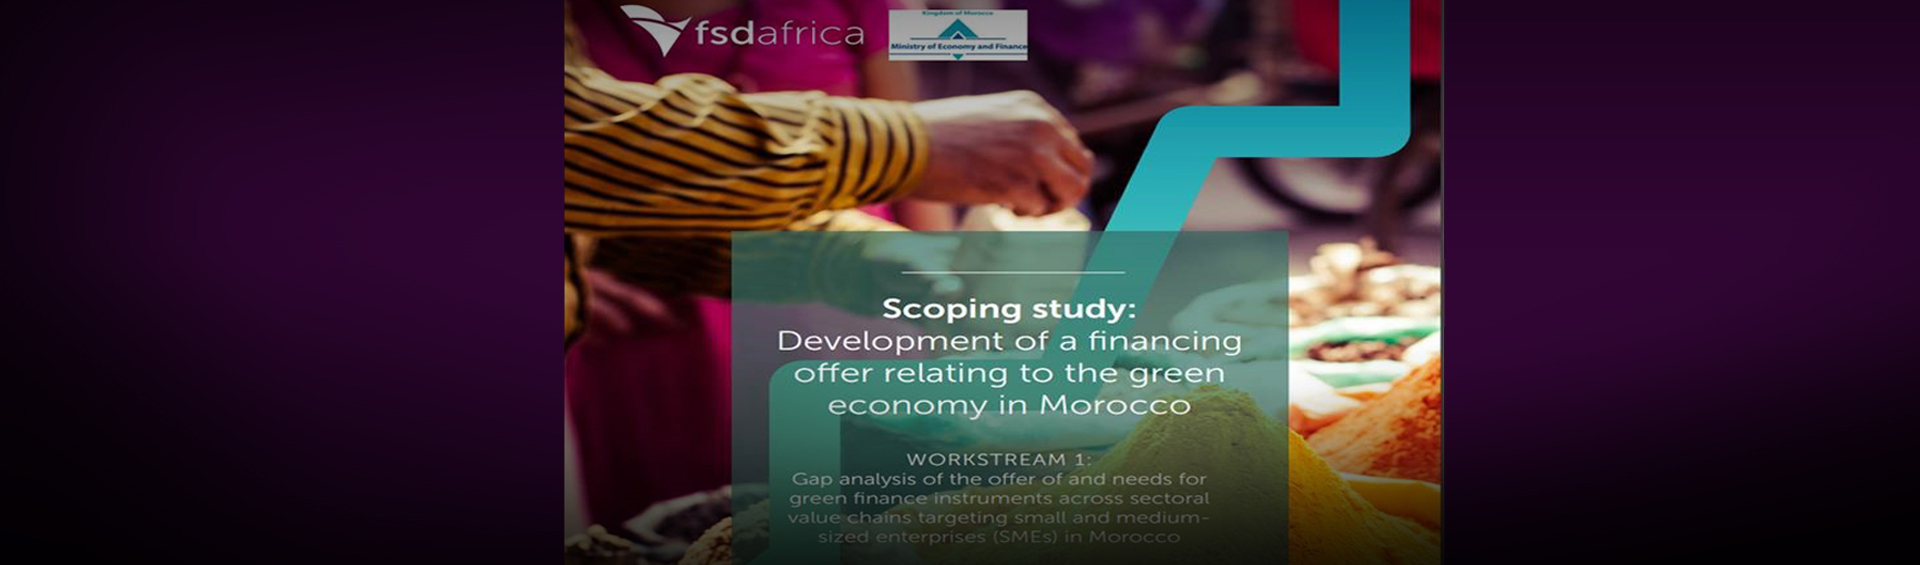 تطلق الوزارة دراسة جديدة لاستكشاف خيارات التمويل للمقاولات الصغيرة والمتوسطة في إطار الاقتصاد الأخضر المزدهر في المغرب